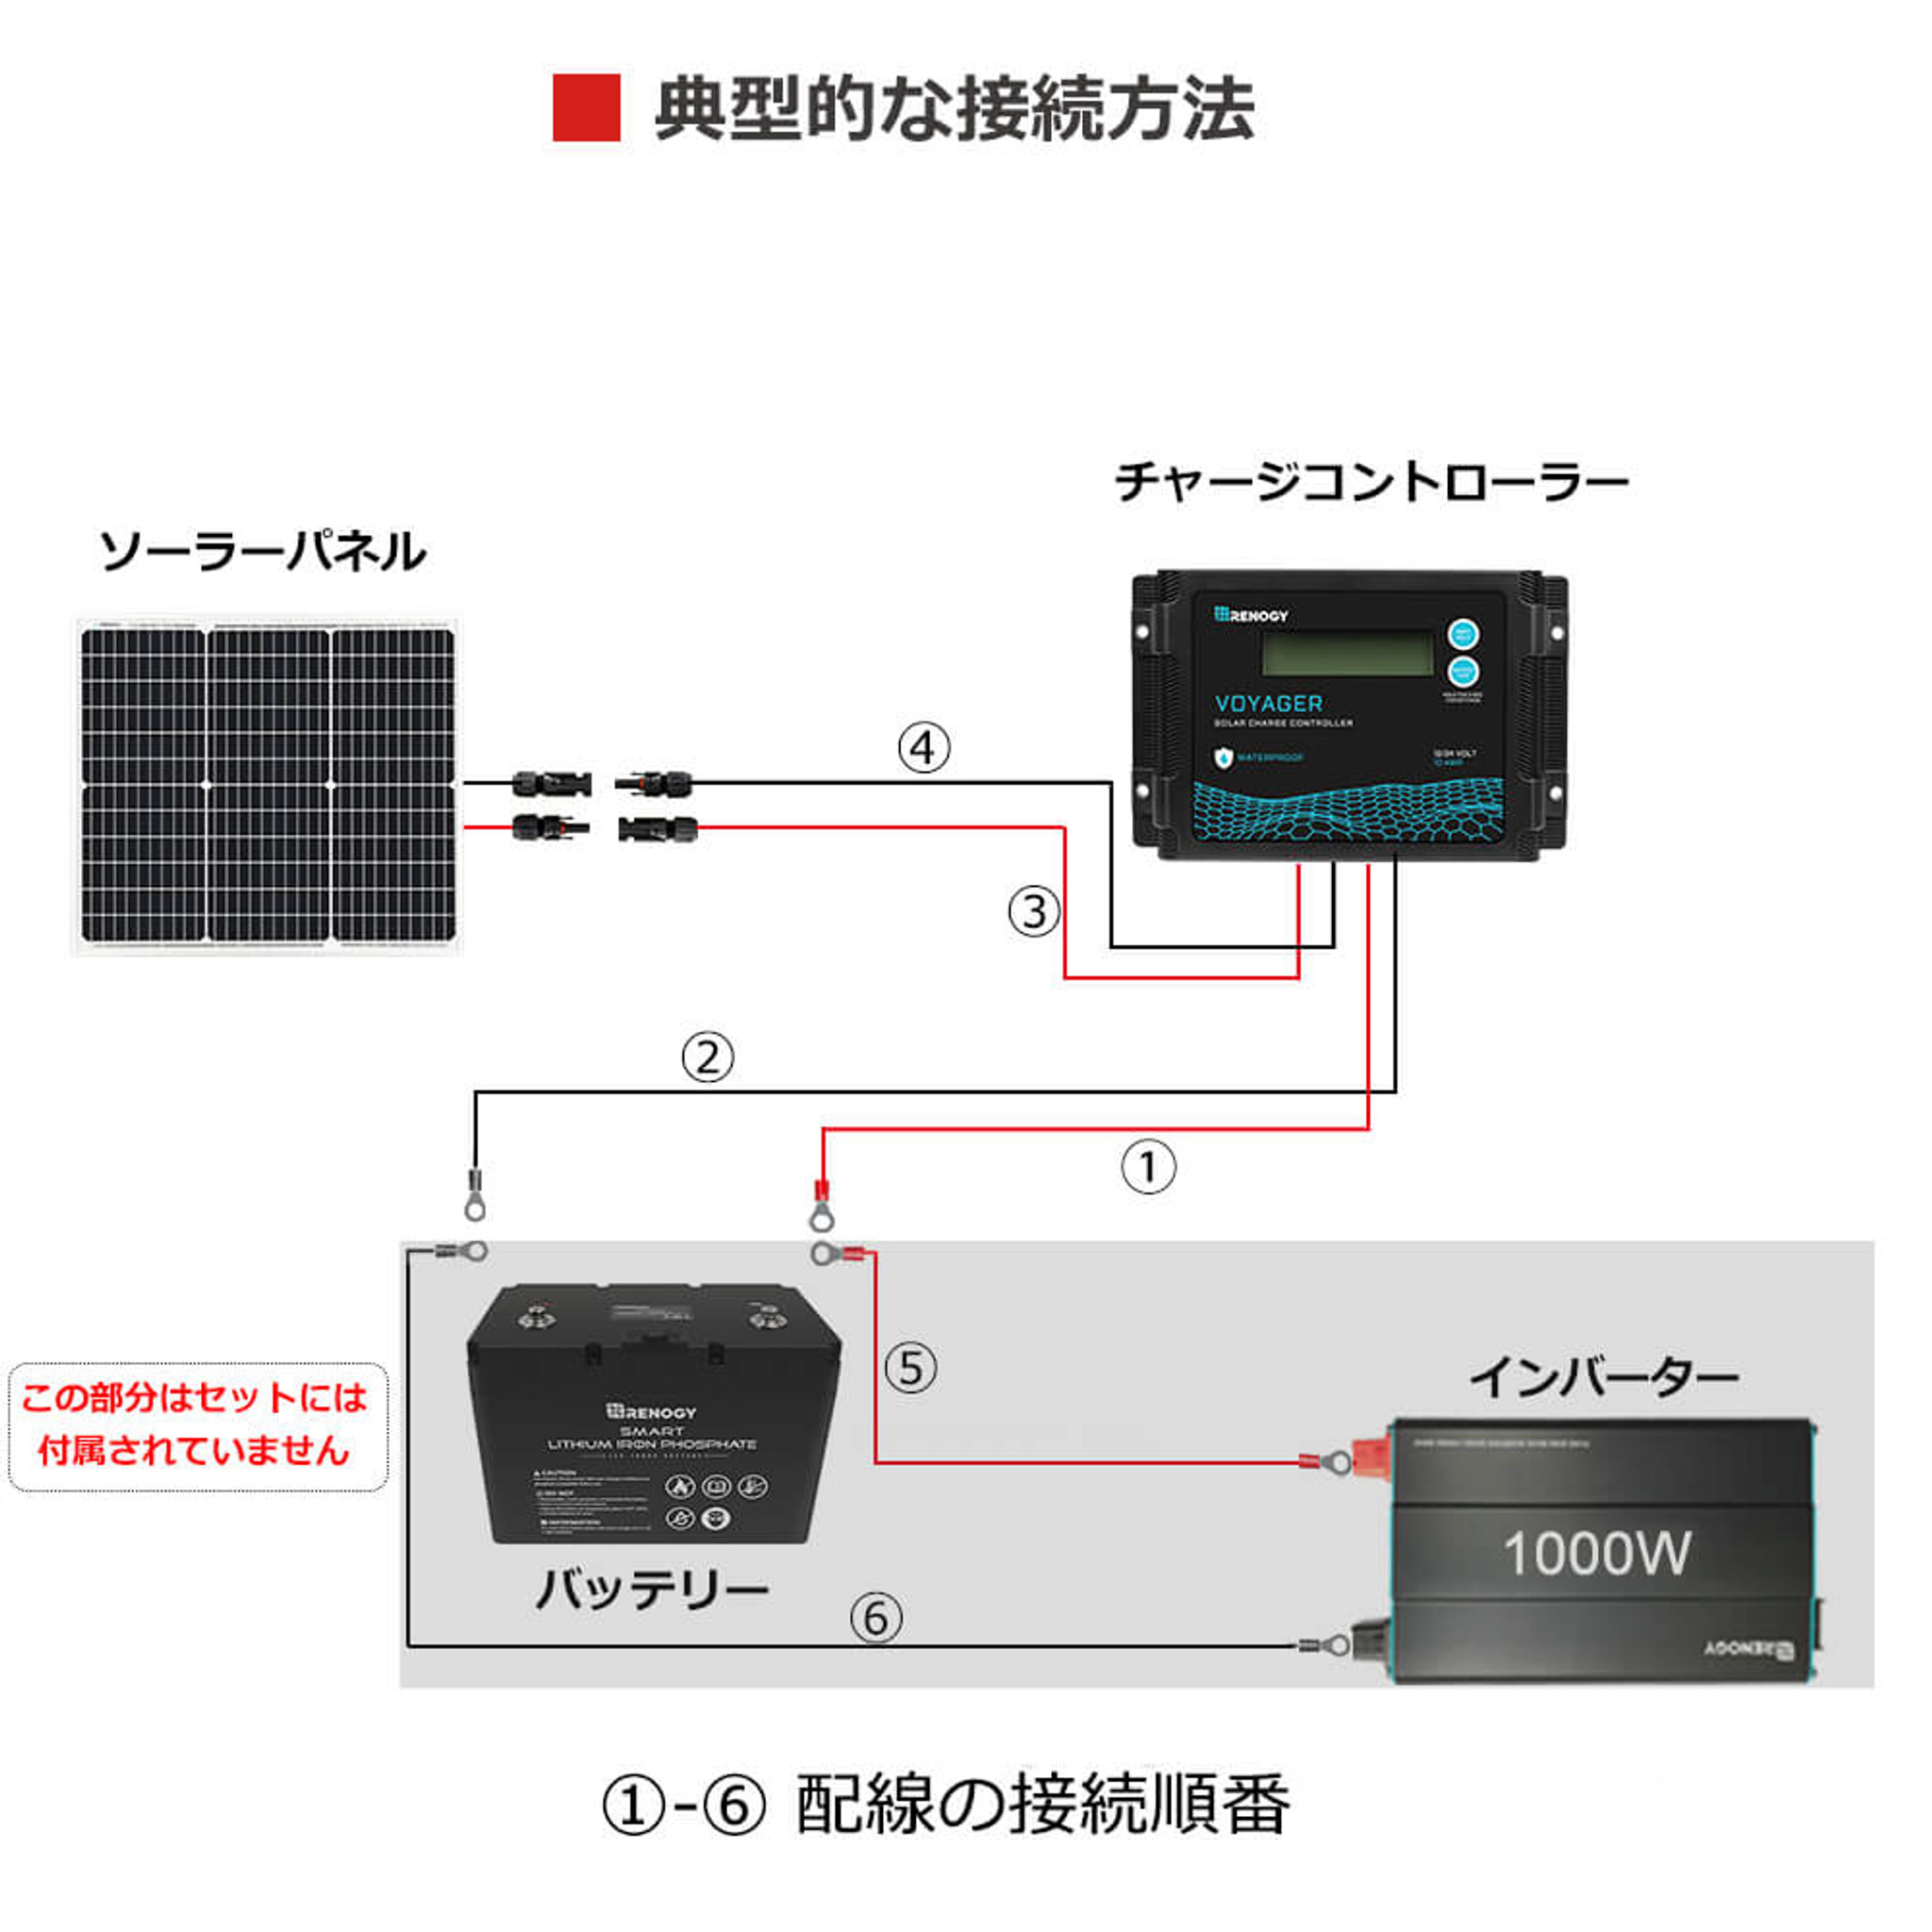 50W単結晶ソーラーパネル+VOY 10A PWMチャージコントローラー セット RENOGY JAPANオンラインショップ